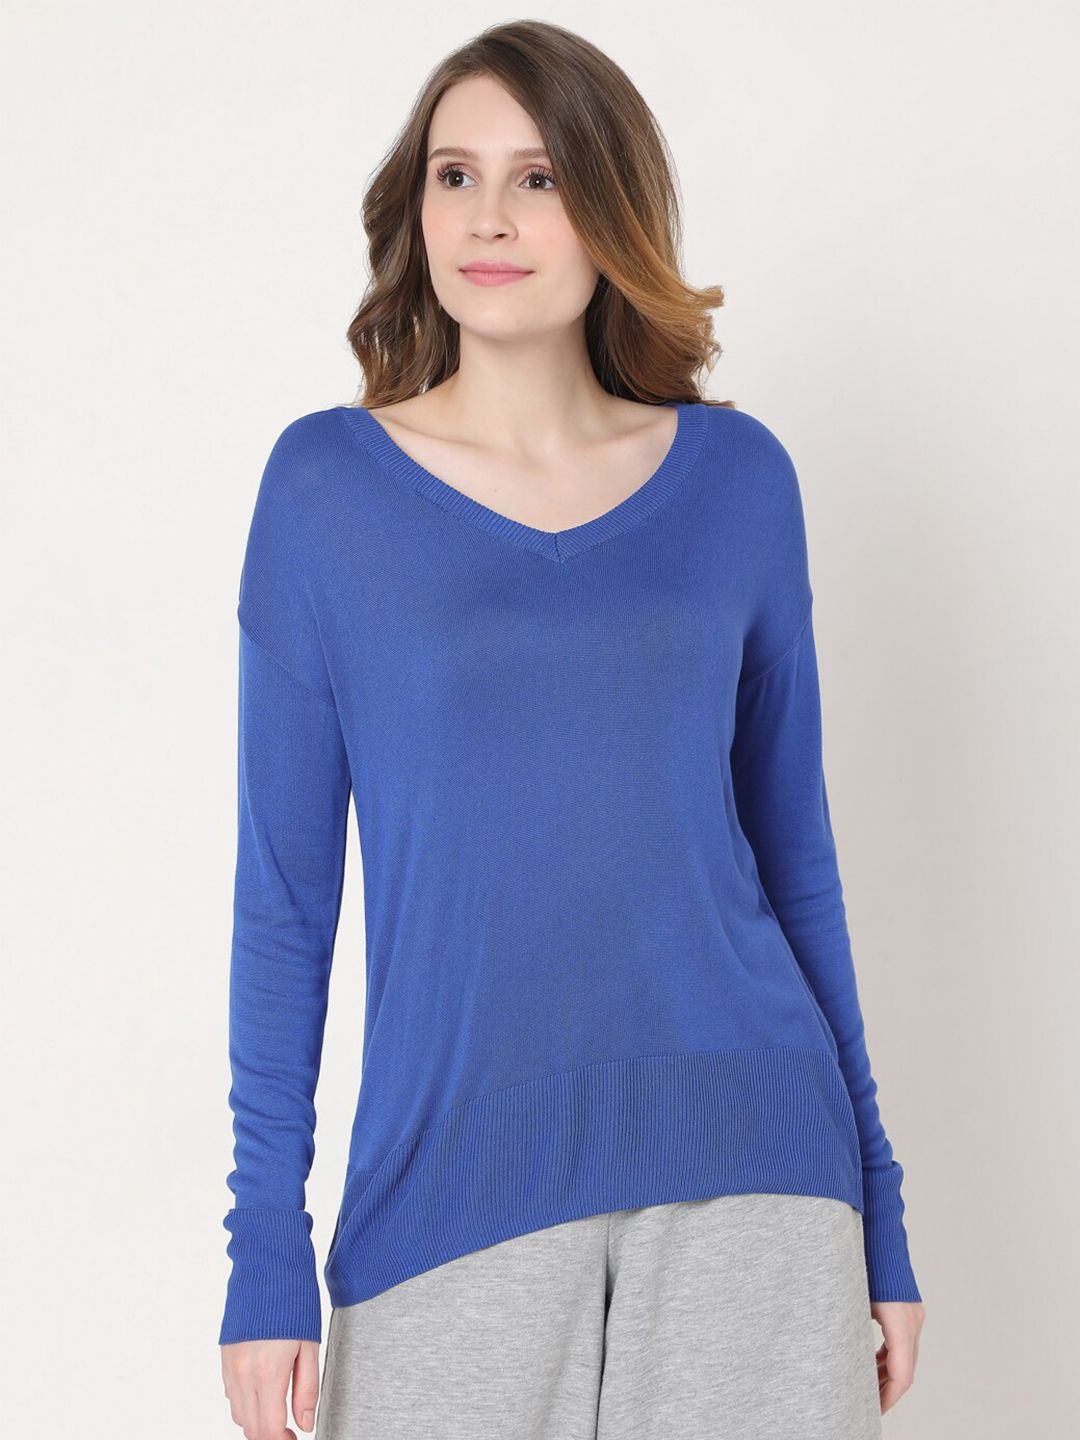 Vero Moda Women Blue Pullover Price in India